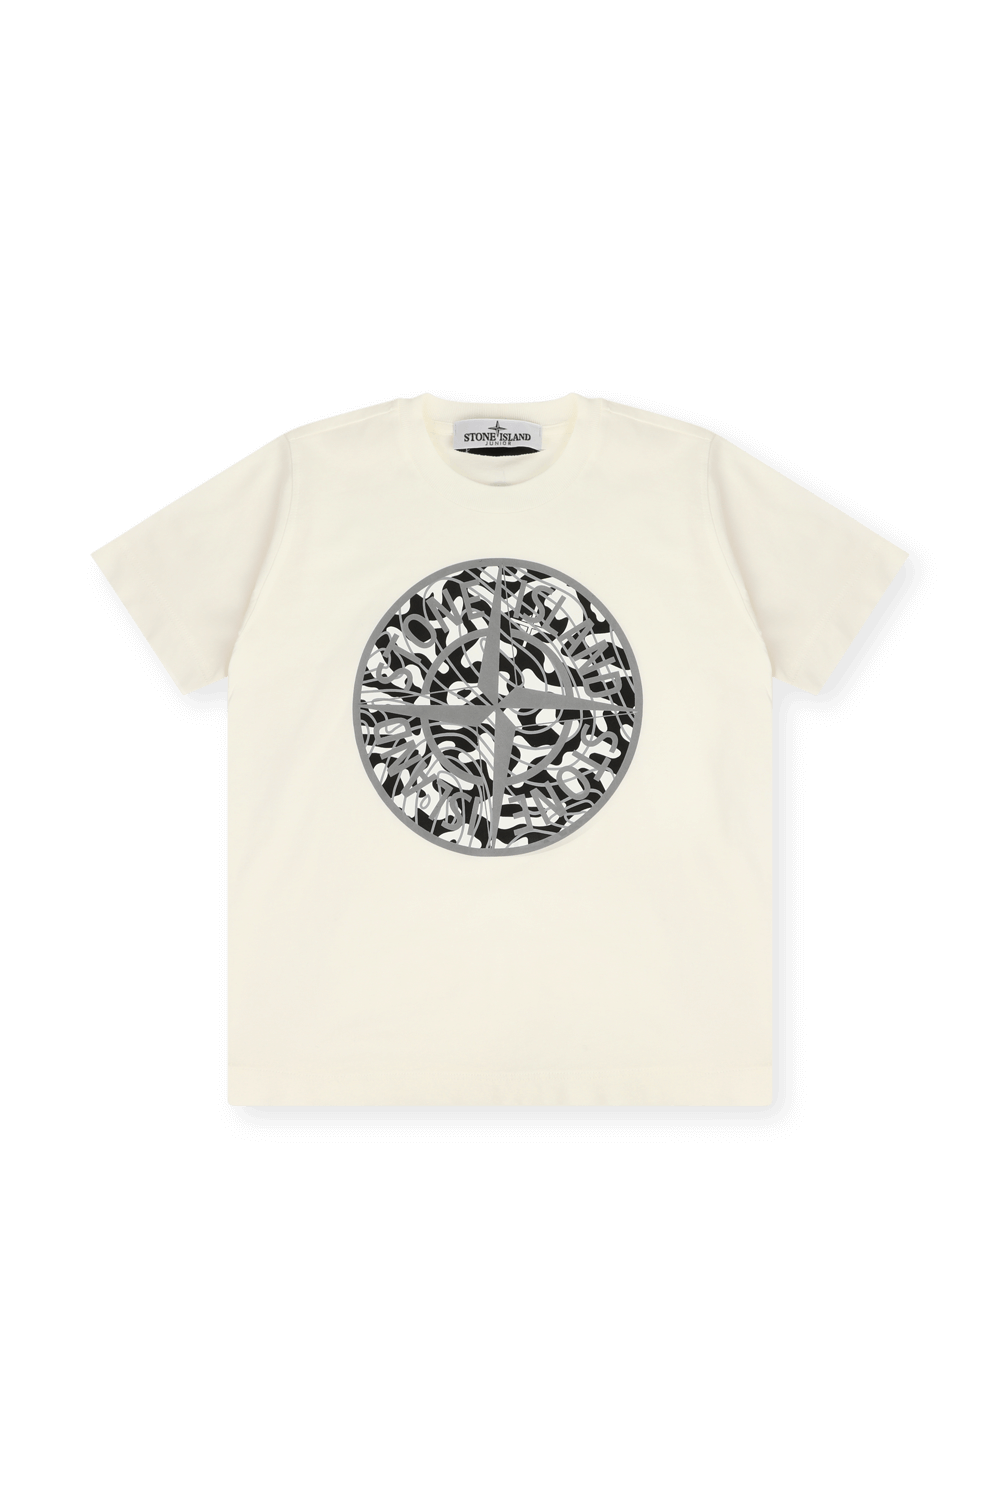 גילאי 6-8 חולצת טי עם הדפס לוגו גראפי STONE ISLAND KIDS